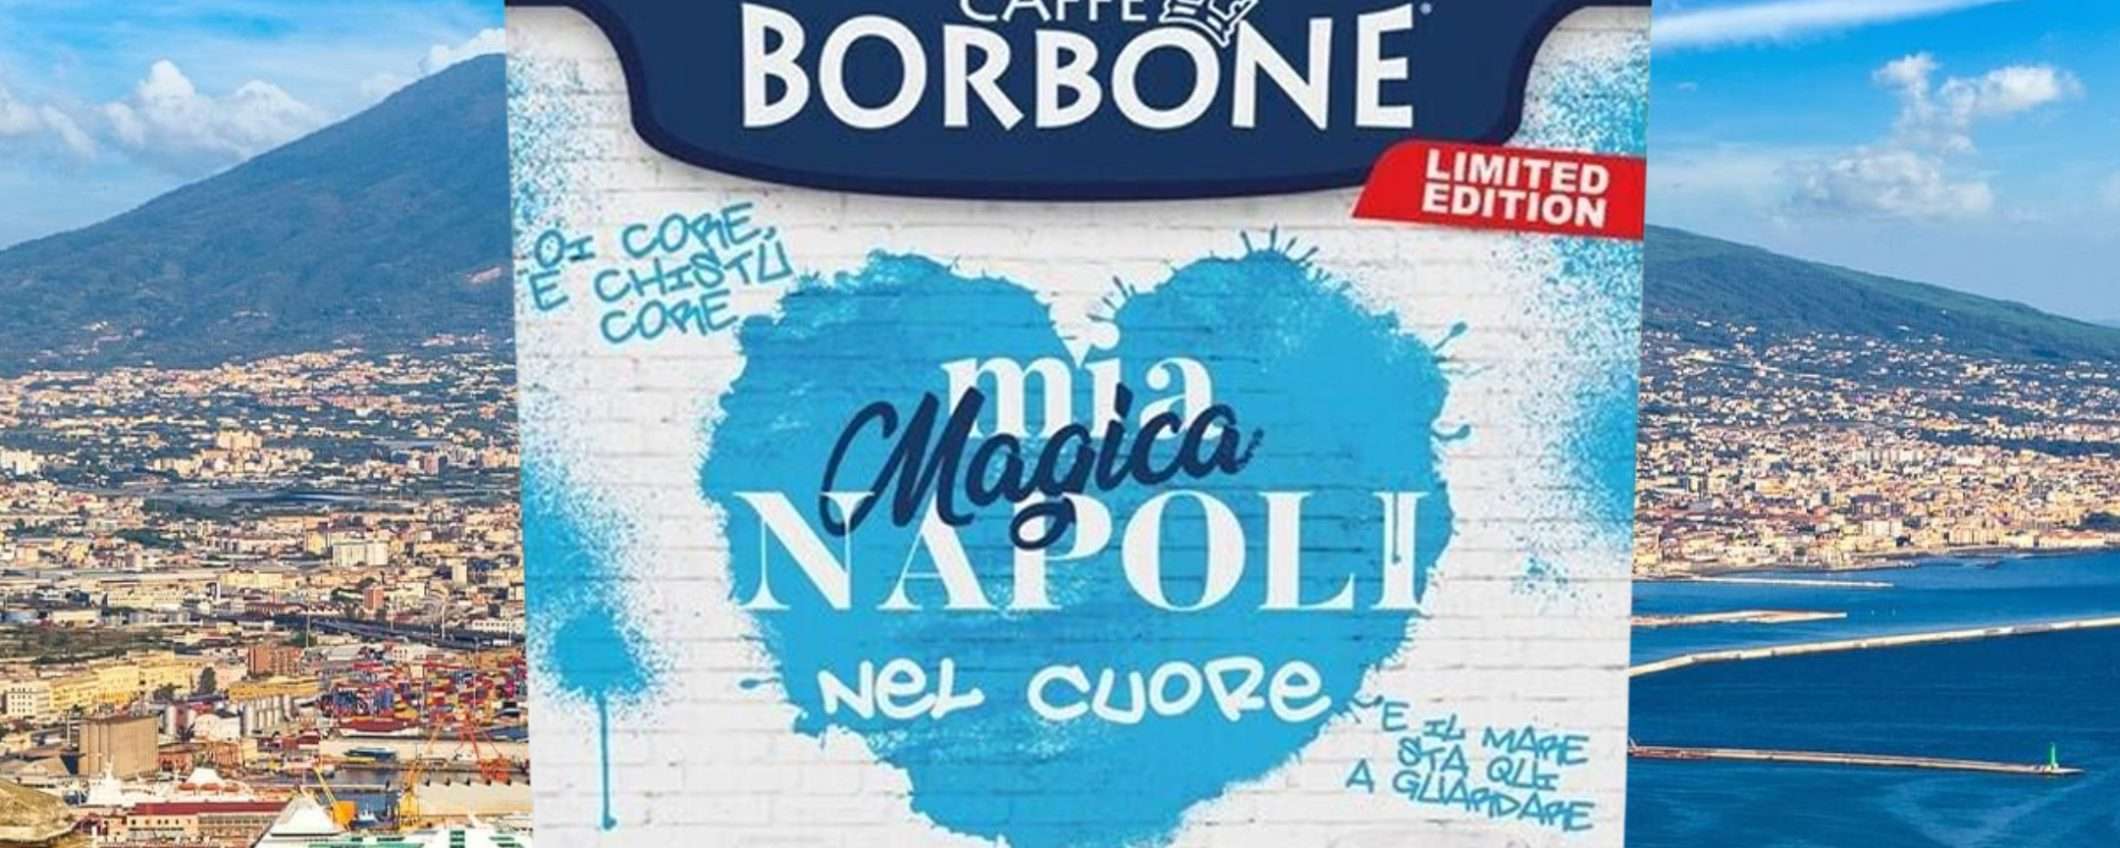 300 cialde Caffè Borbone Miscela Mia Magica NAPOLI Blu a soli 38€ su eBay